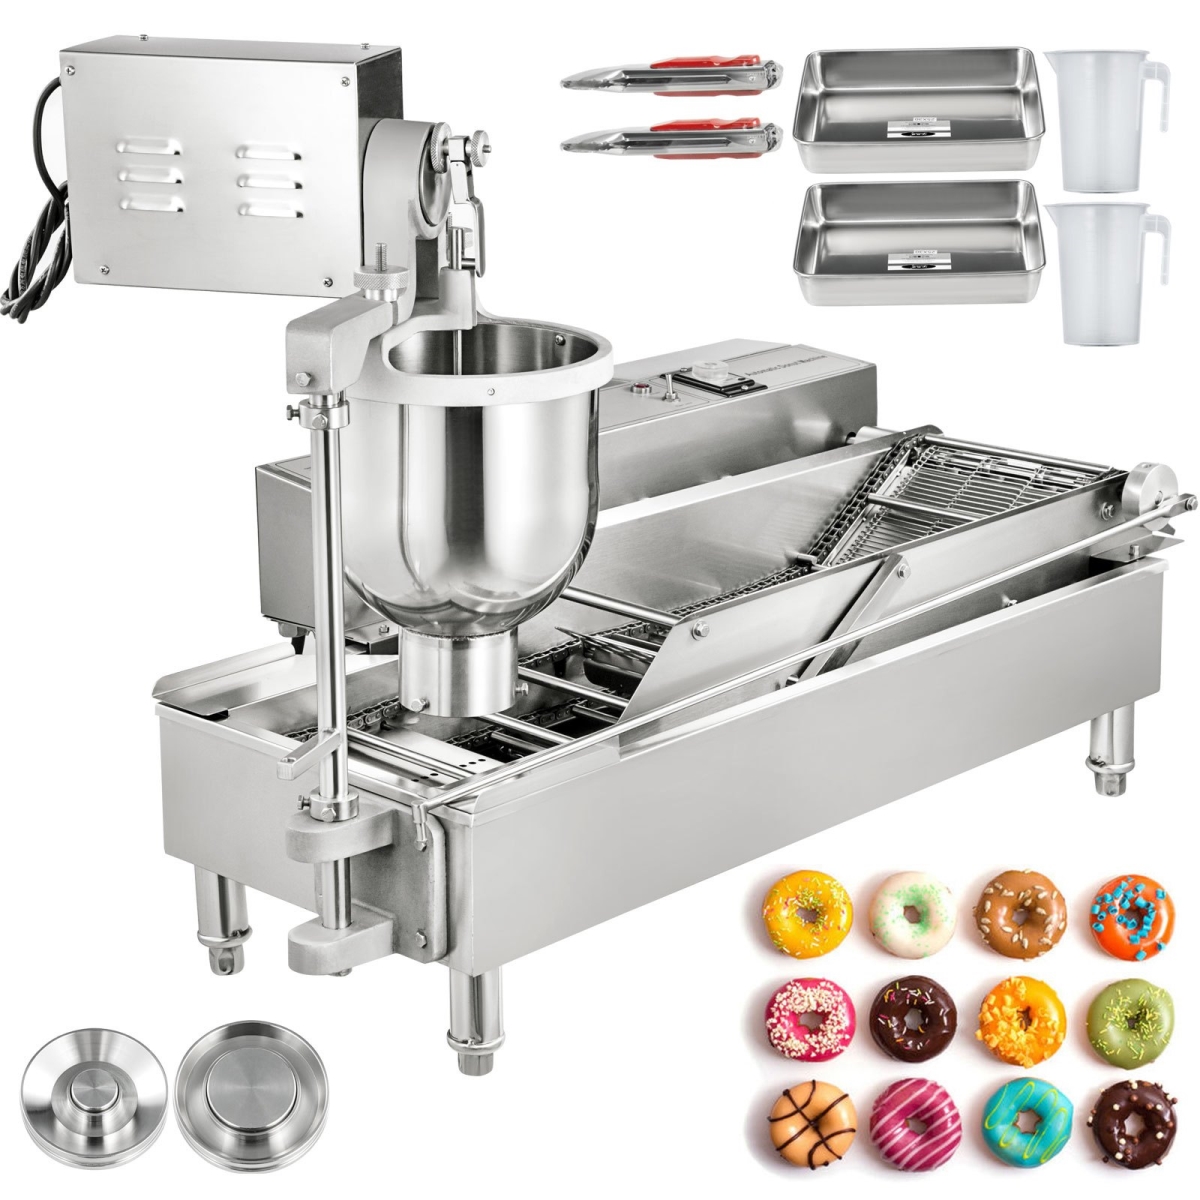 VEVOR QZDTTQJSP00000001V1 7 Liter Commercial Automatic Donut Making Machine with 3 Sizes Moulds 110V Doughnut Fryer